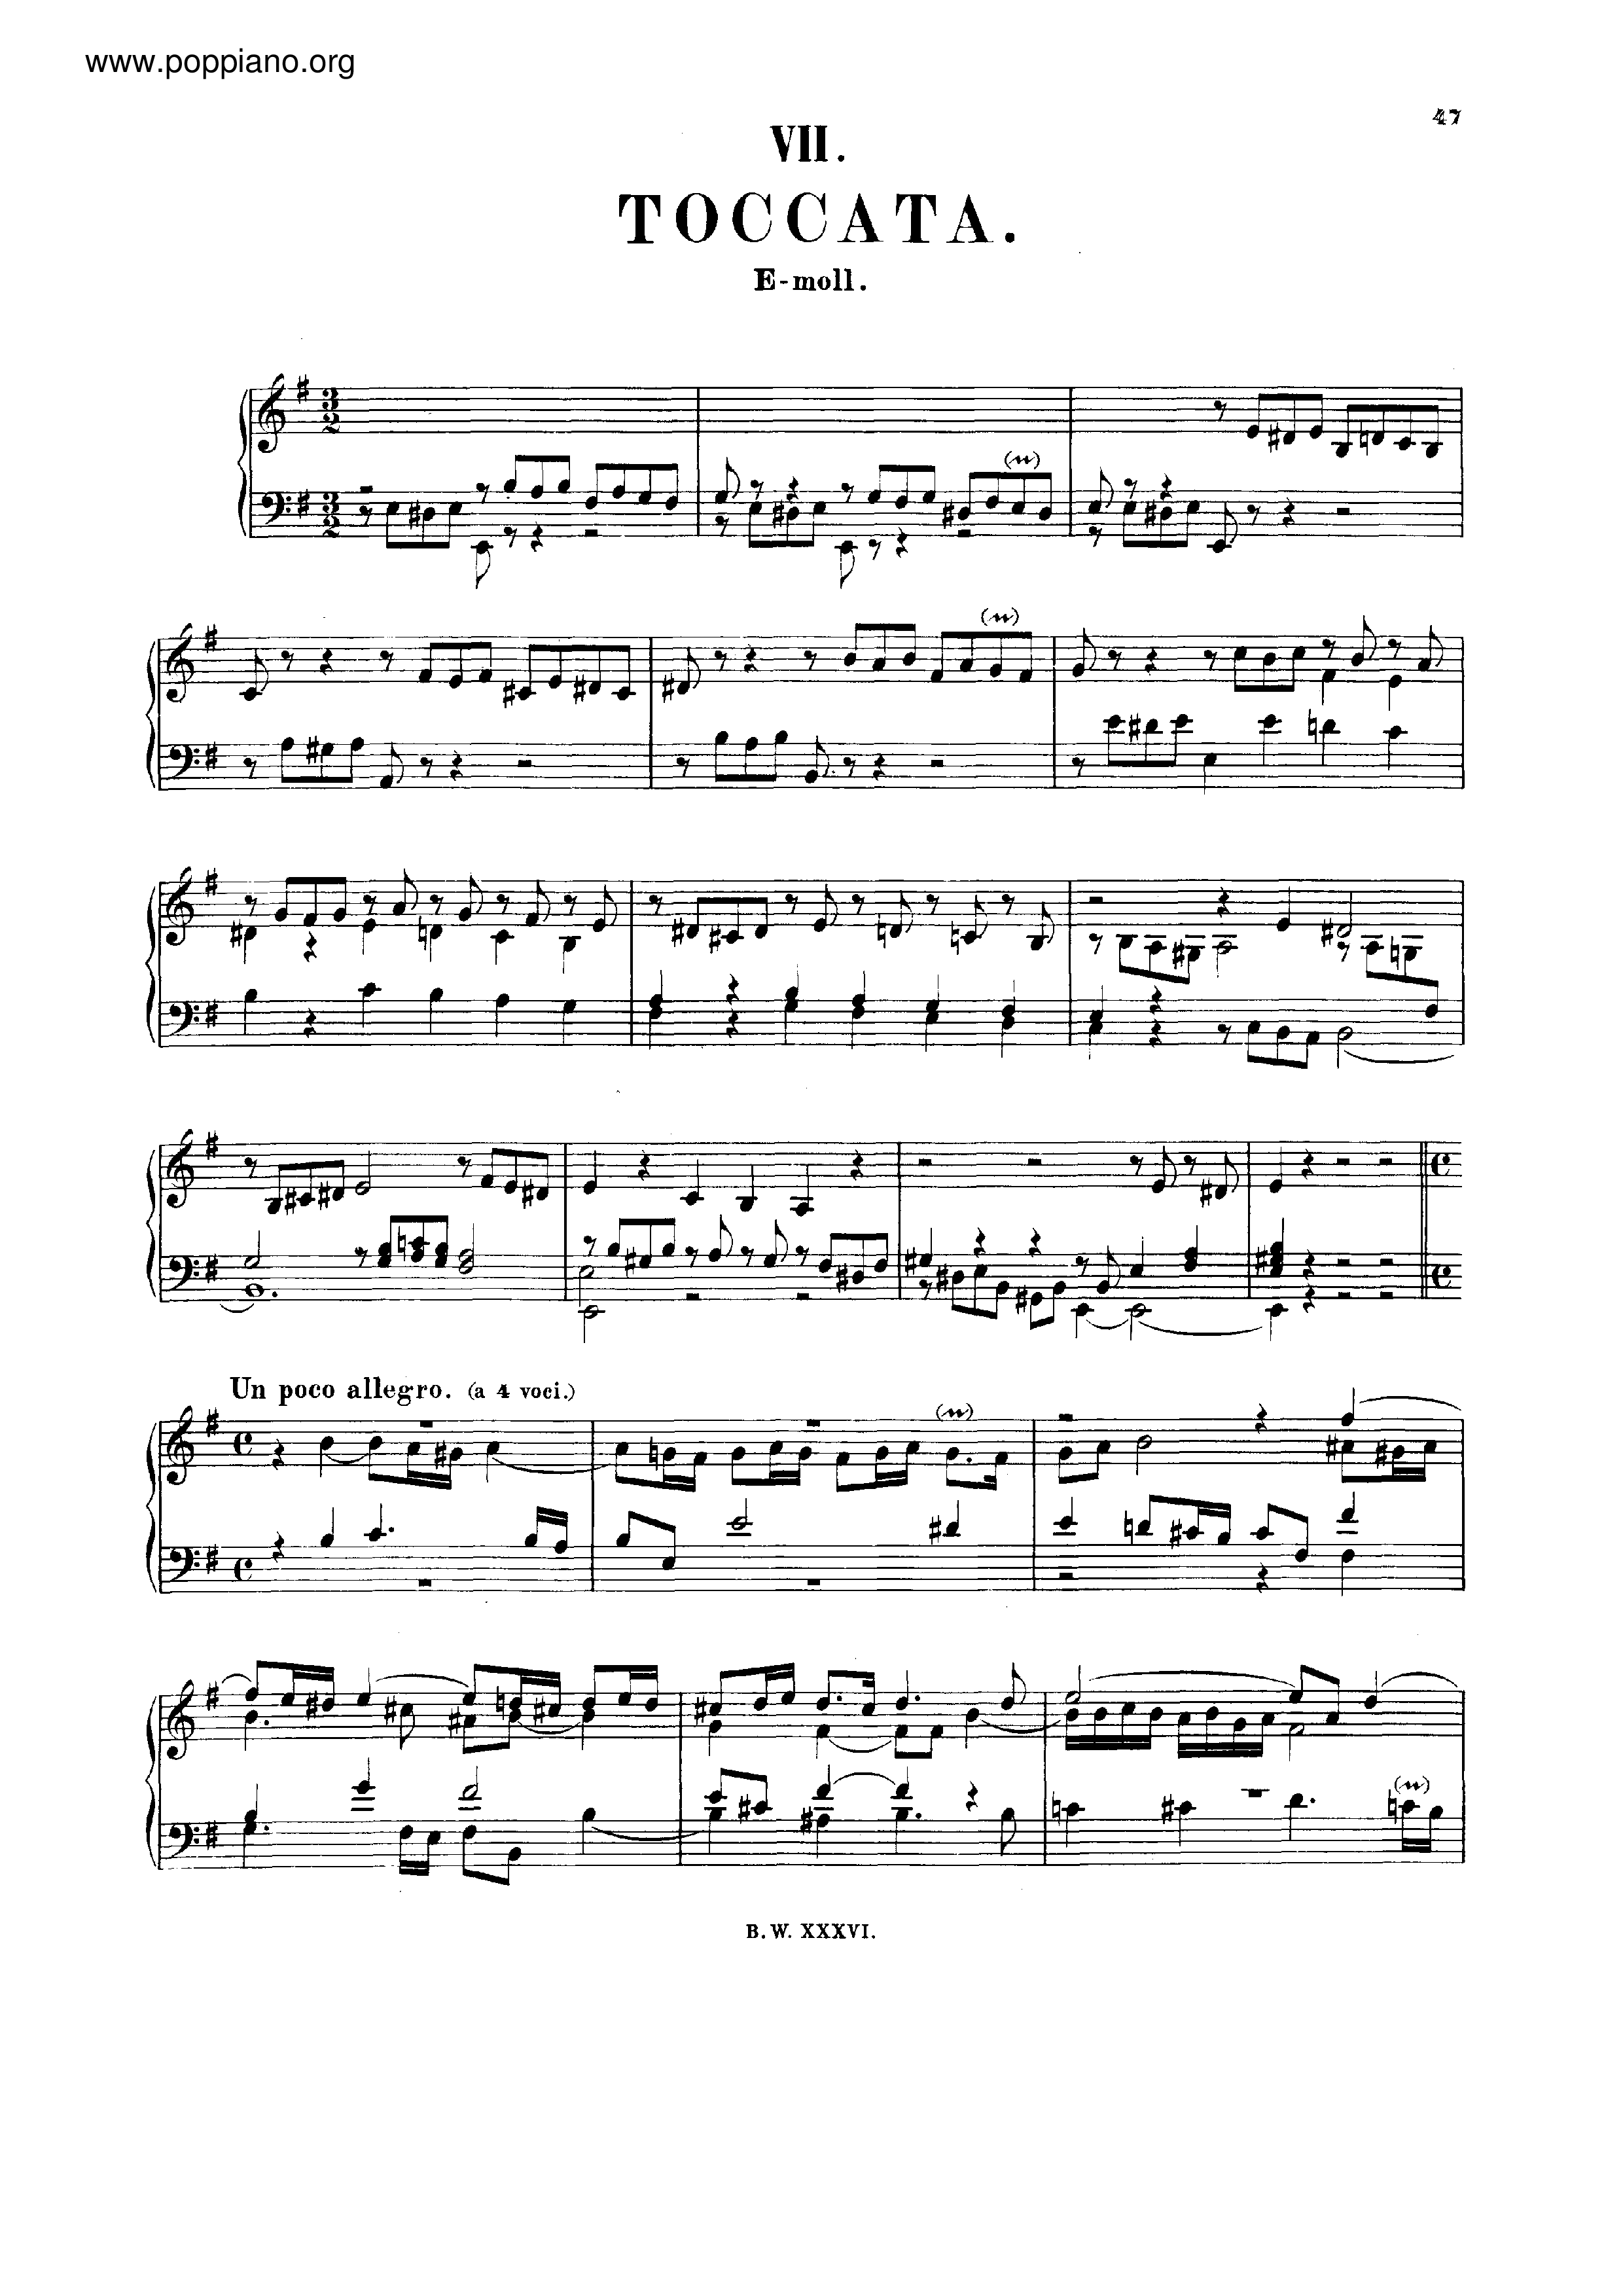 Toccata in E minor, BWV 914琴谱